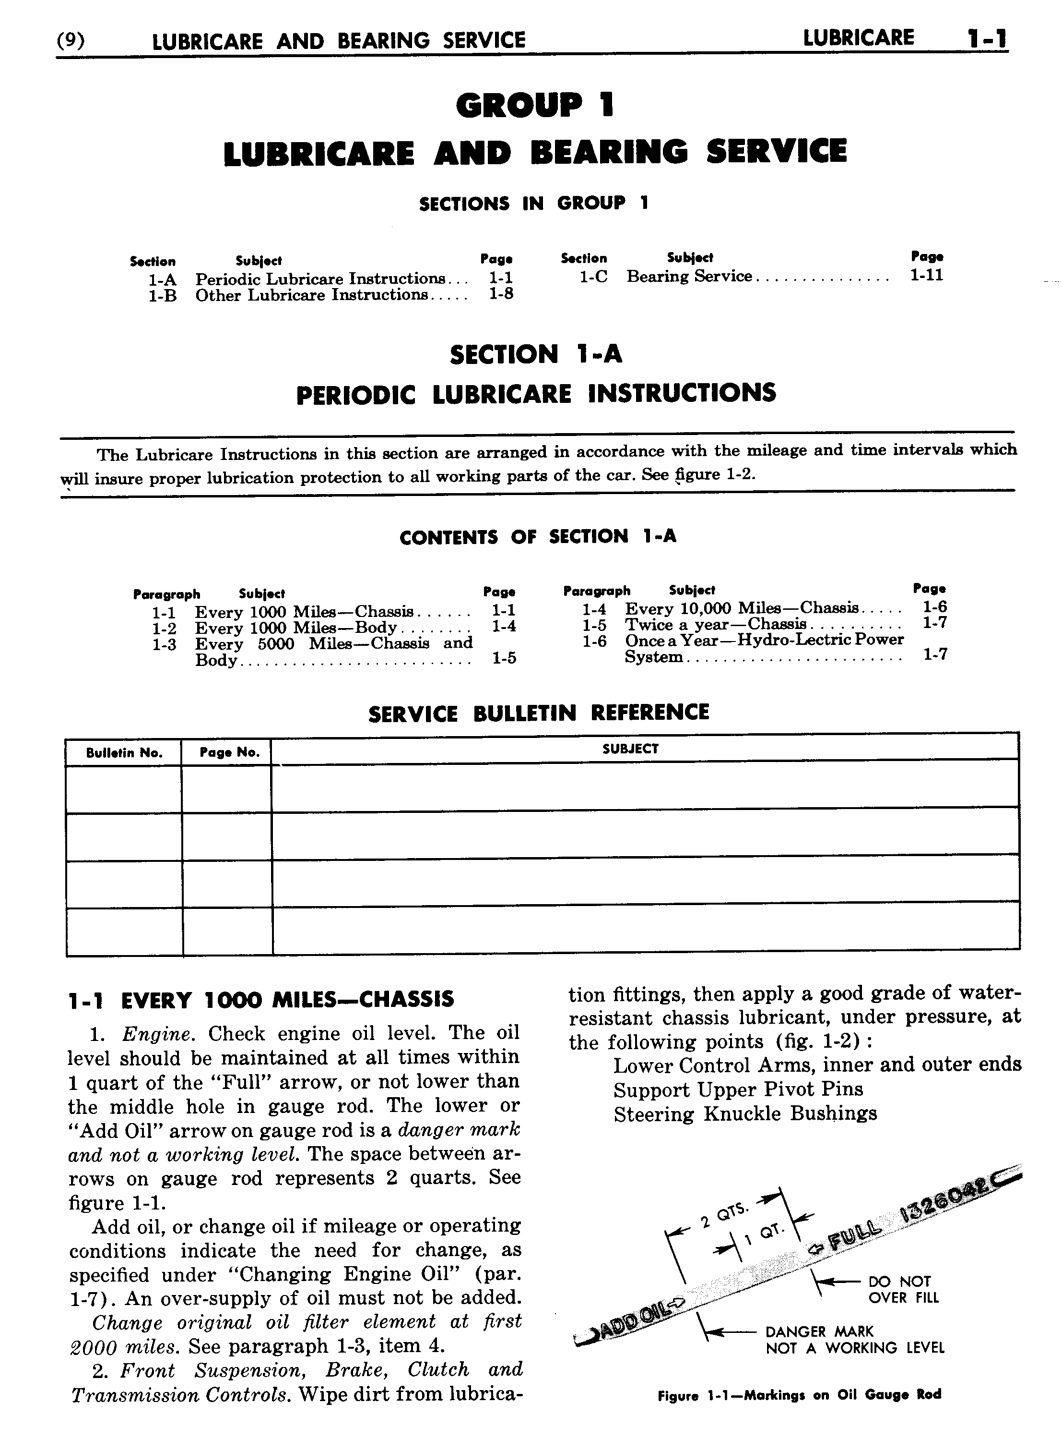 n_02 1948 Buick Shop Manual - Lubricare-001-001.jpg